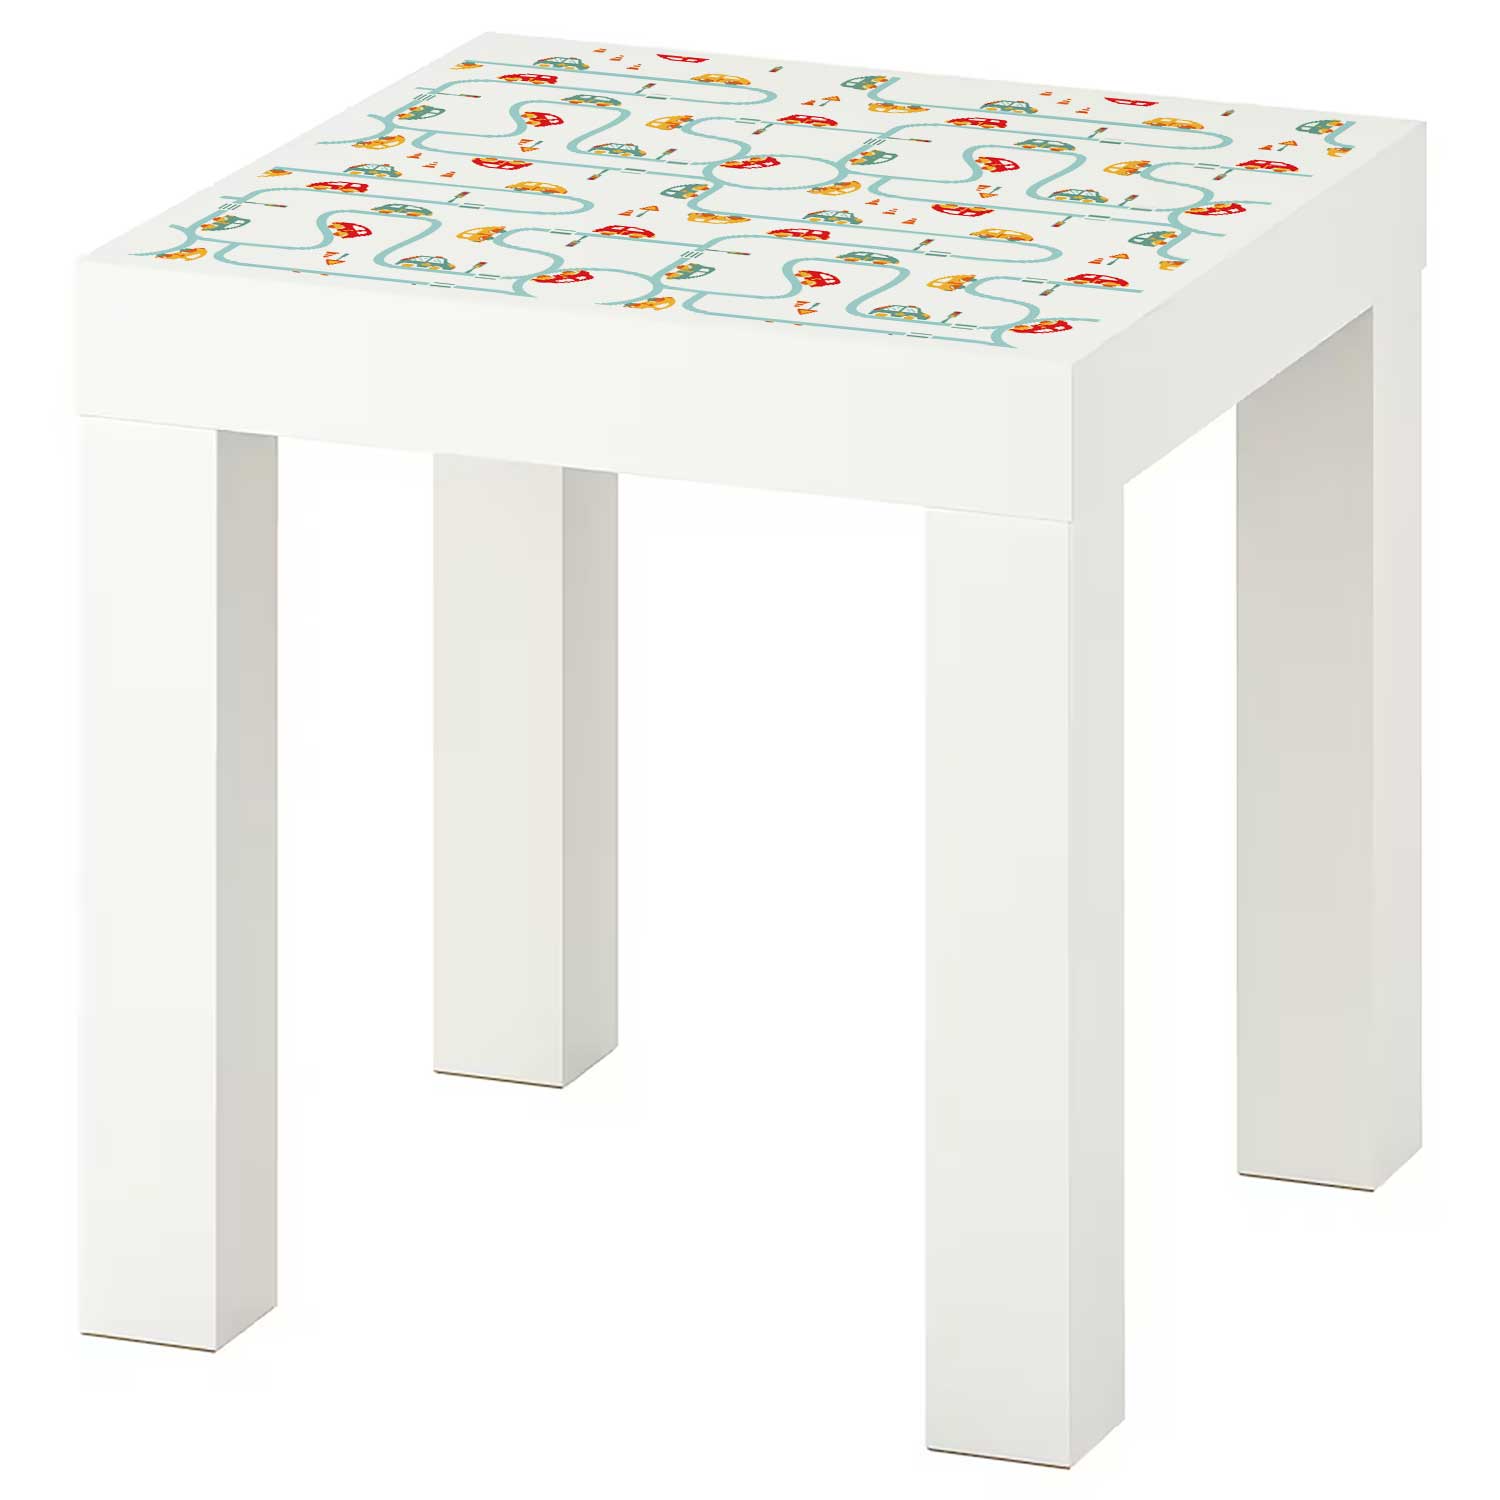 Möbelfolie Kinder für IKEA Lack Tisch 35x35 cm 'Autoverkehr'